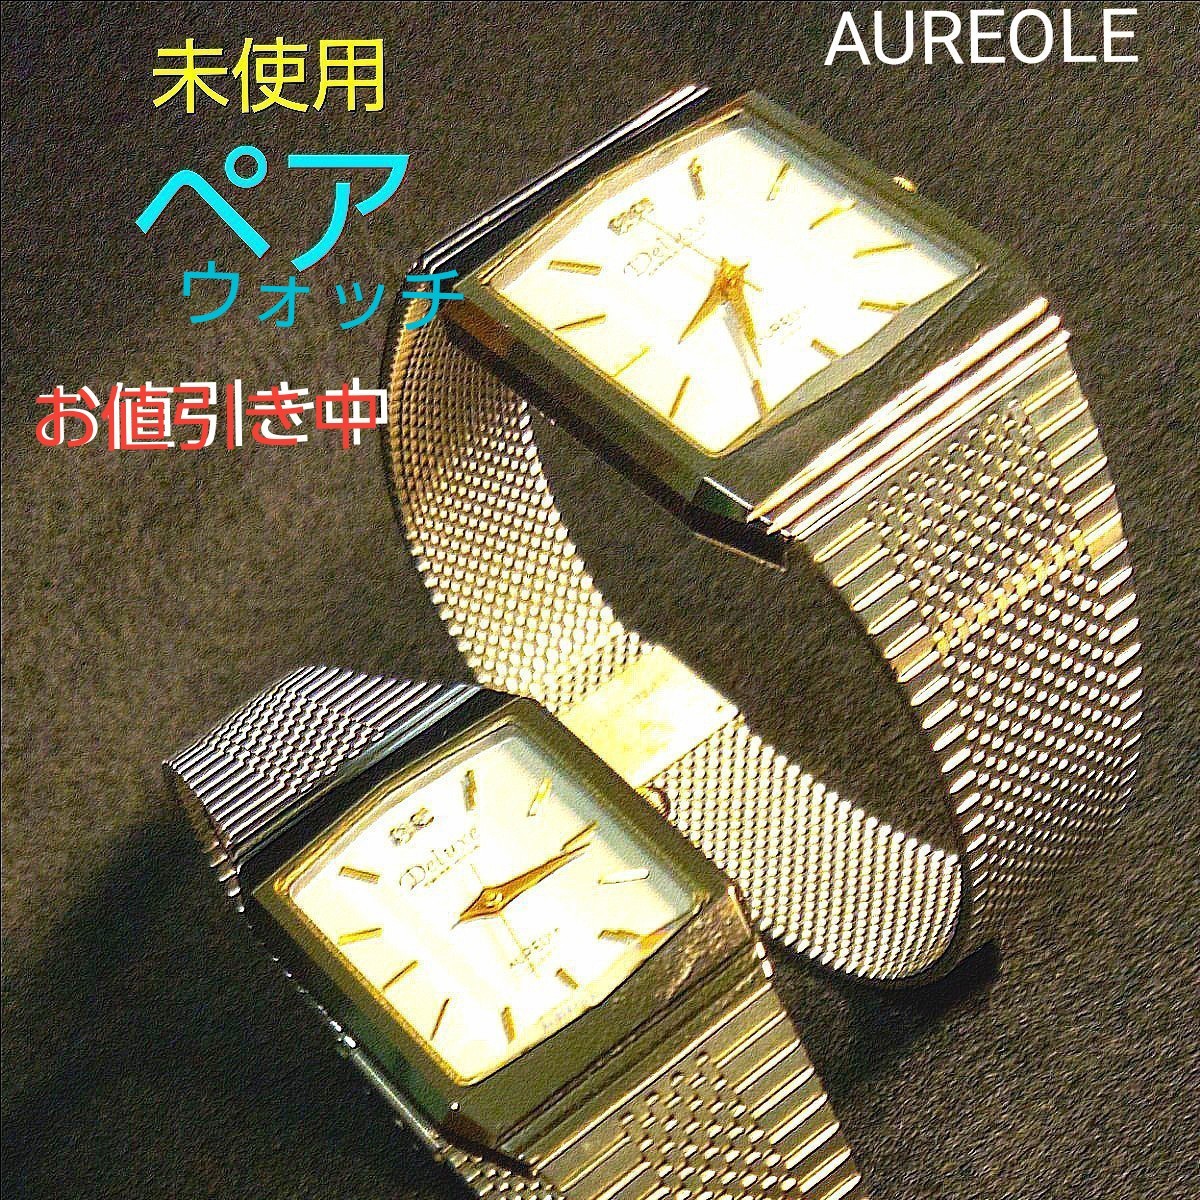 未使用 アンティーク ペアウォッチ 腕時計 オレオールクォーツ  専用箱入り  美品 AUREOLE